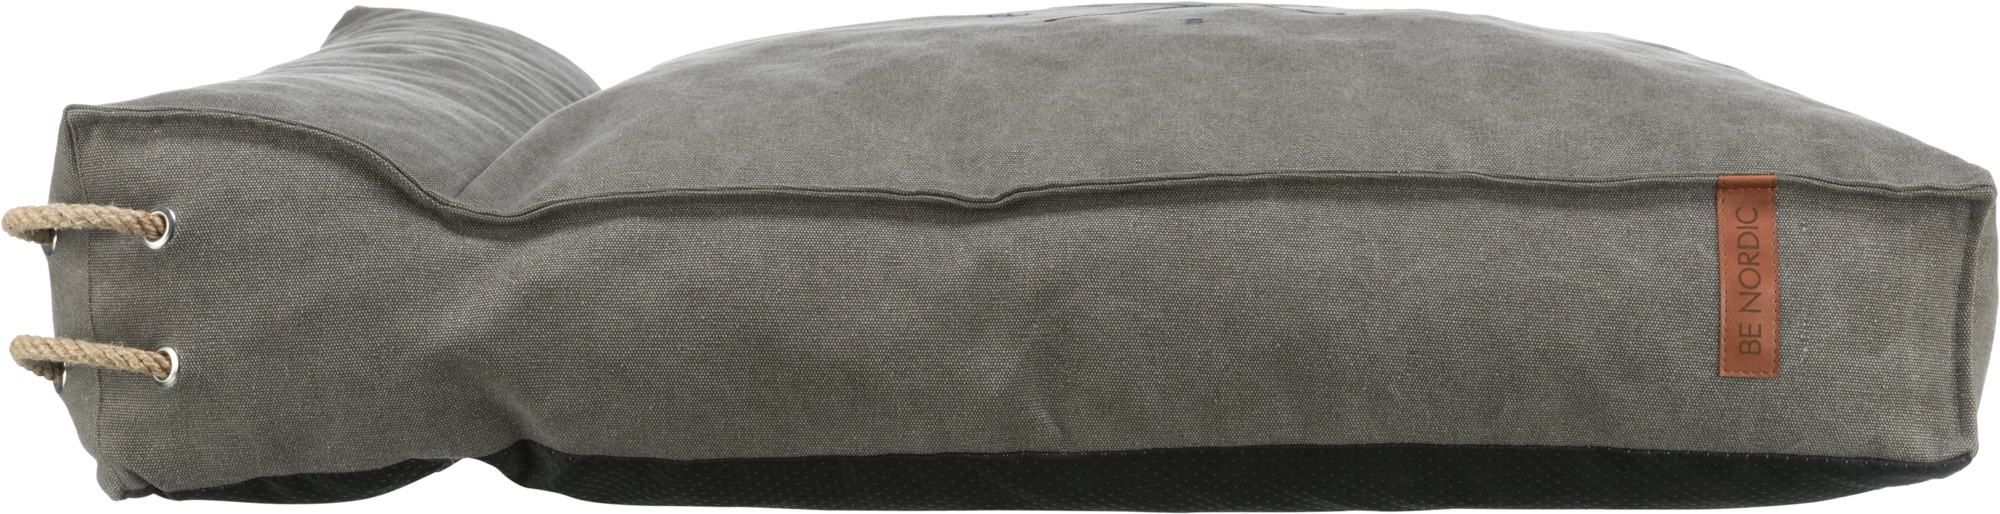 Materasso con bordo Trixie BE NORDIC Föhr grigio scuro - diverse taglie disponibili